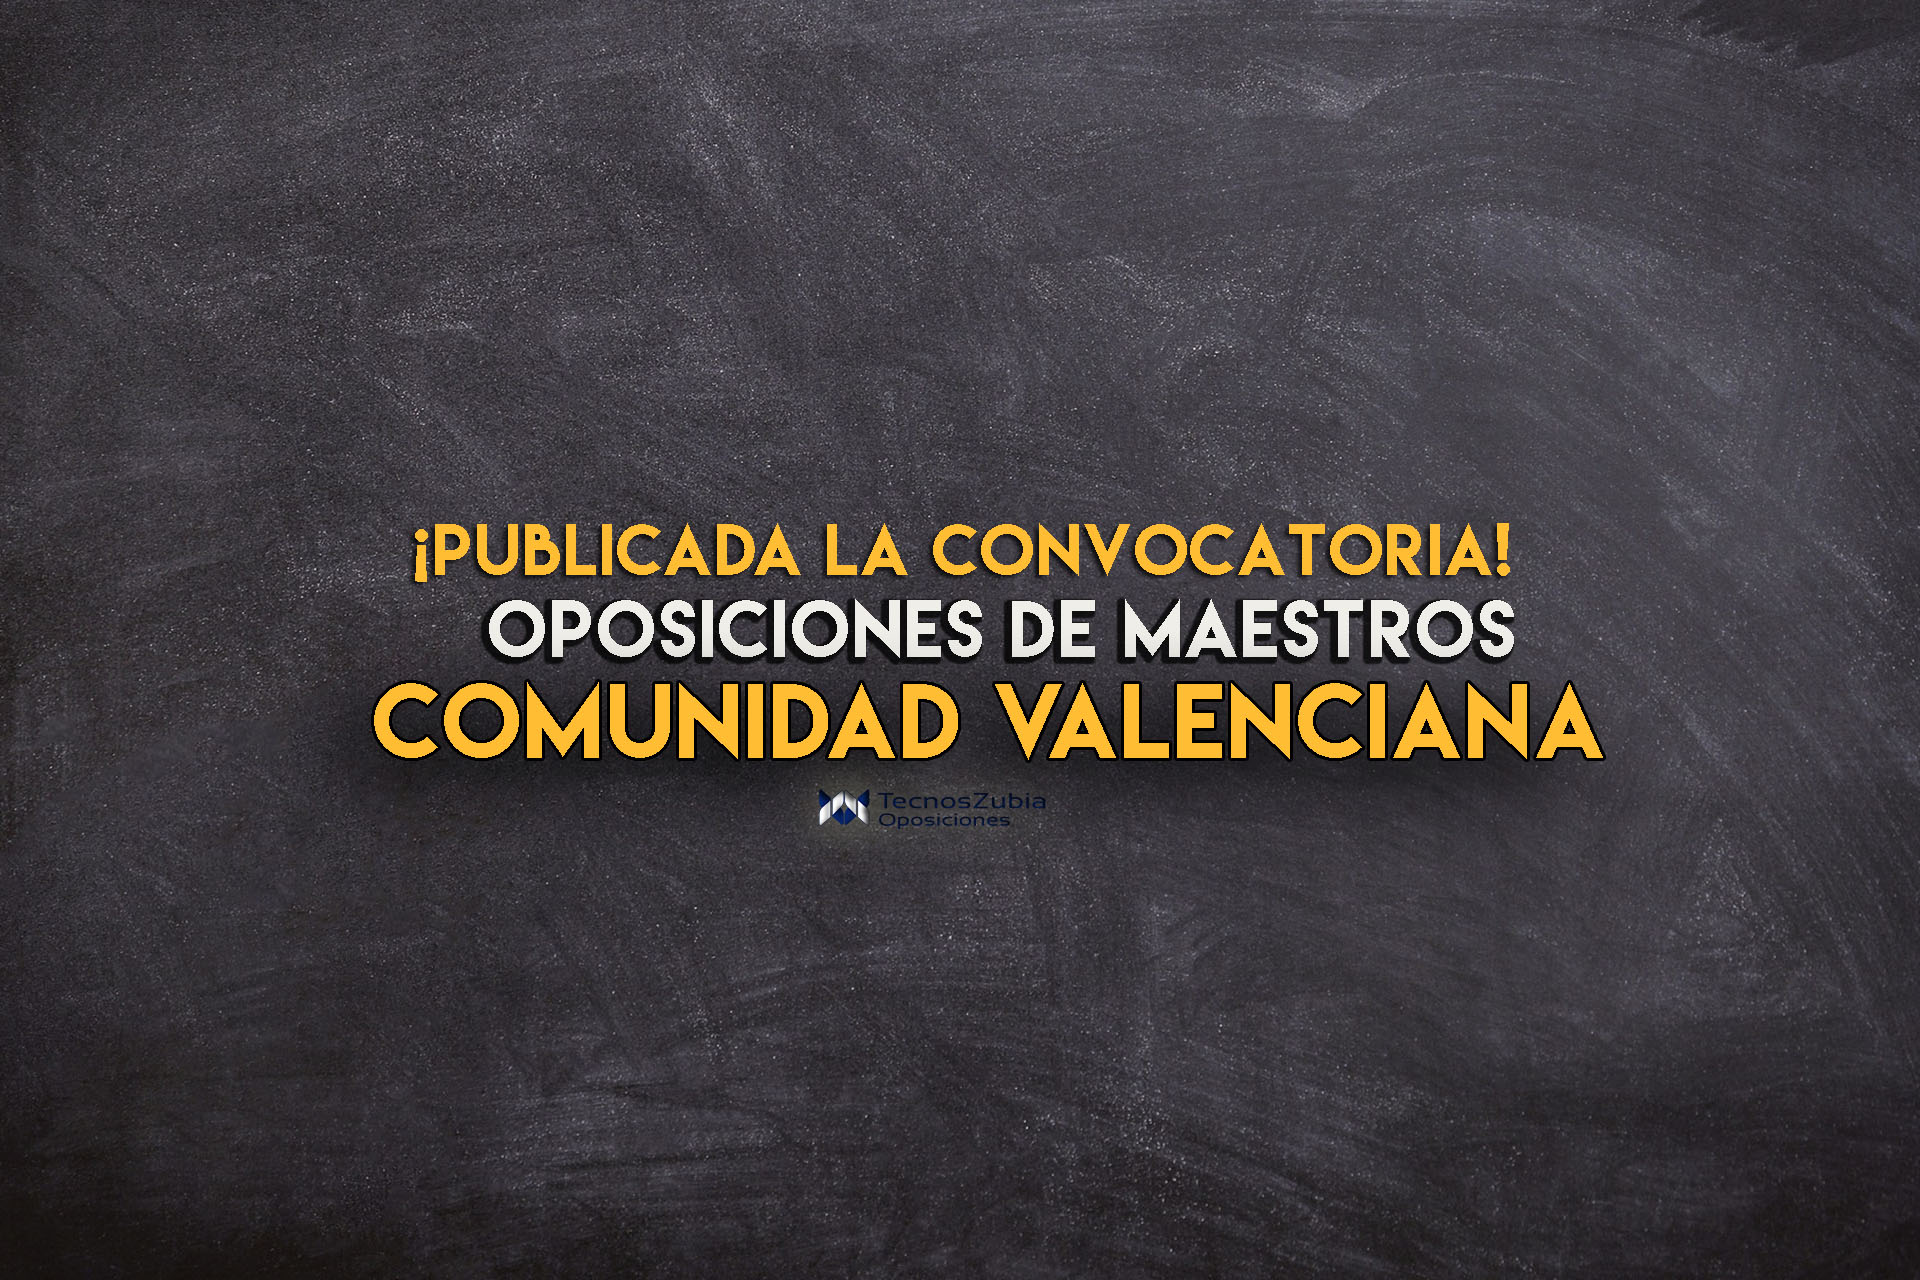 Convocatoria publicada. Oposiciones maestros Valencia.